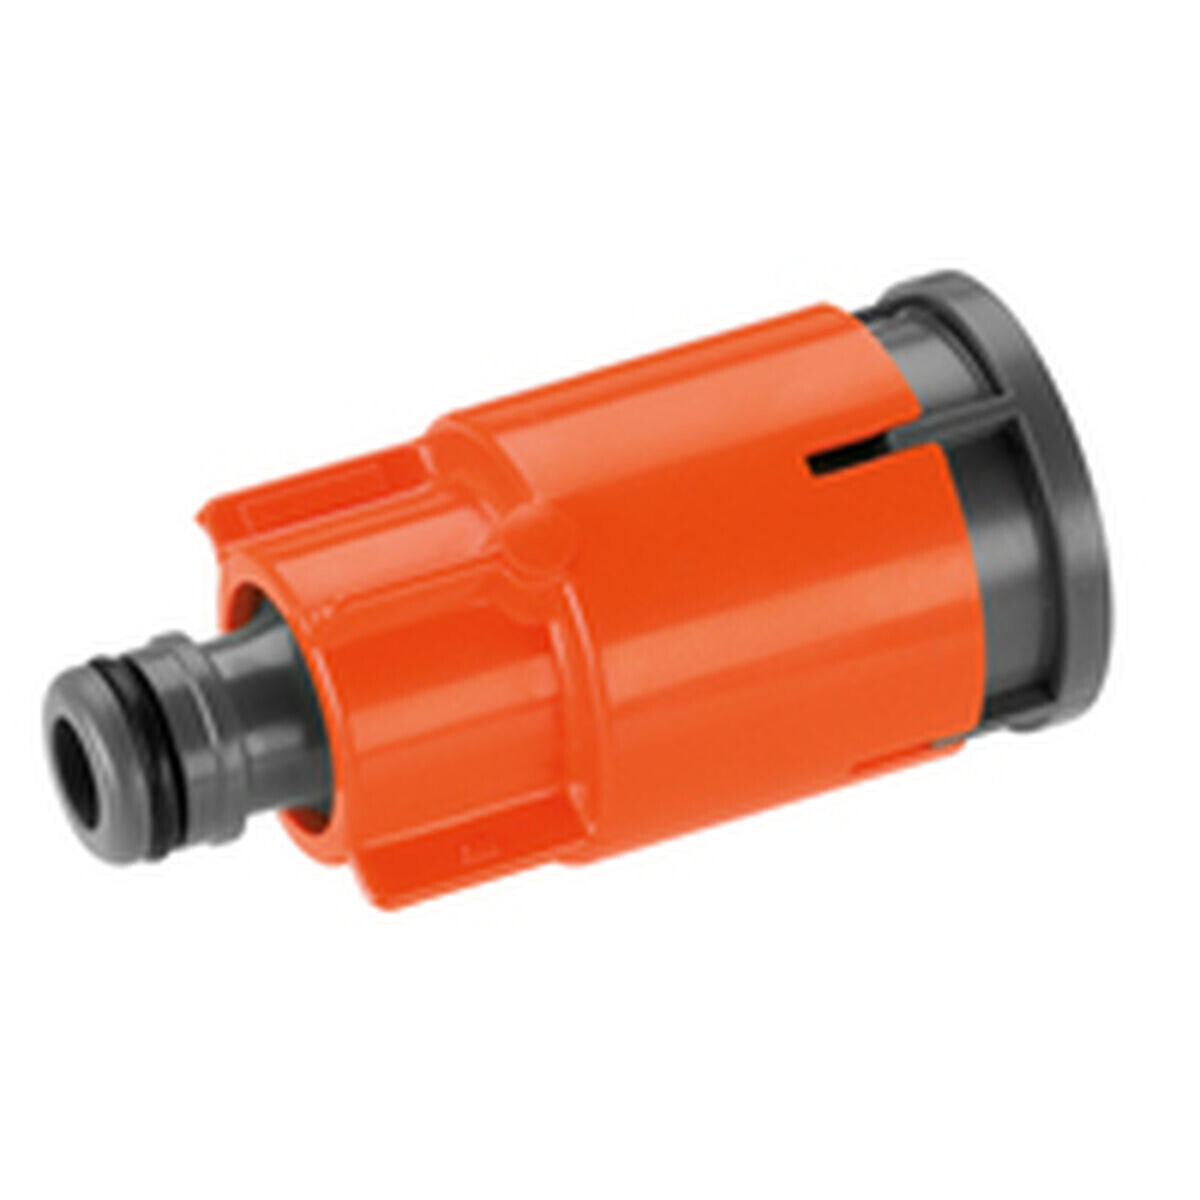 Water connector with shut off valve Gardena 5797-20 Aquastop Orange